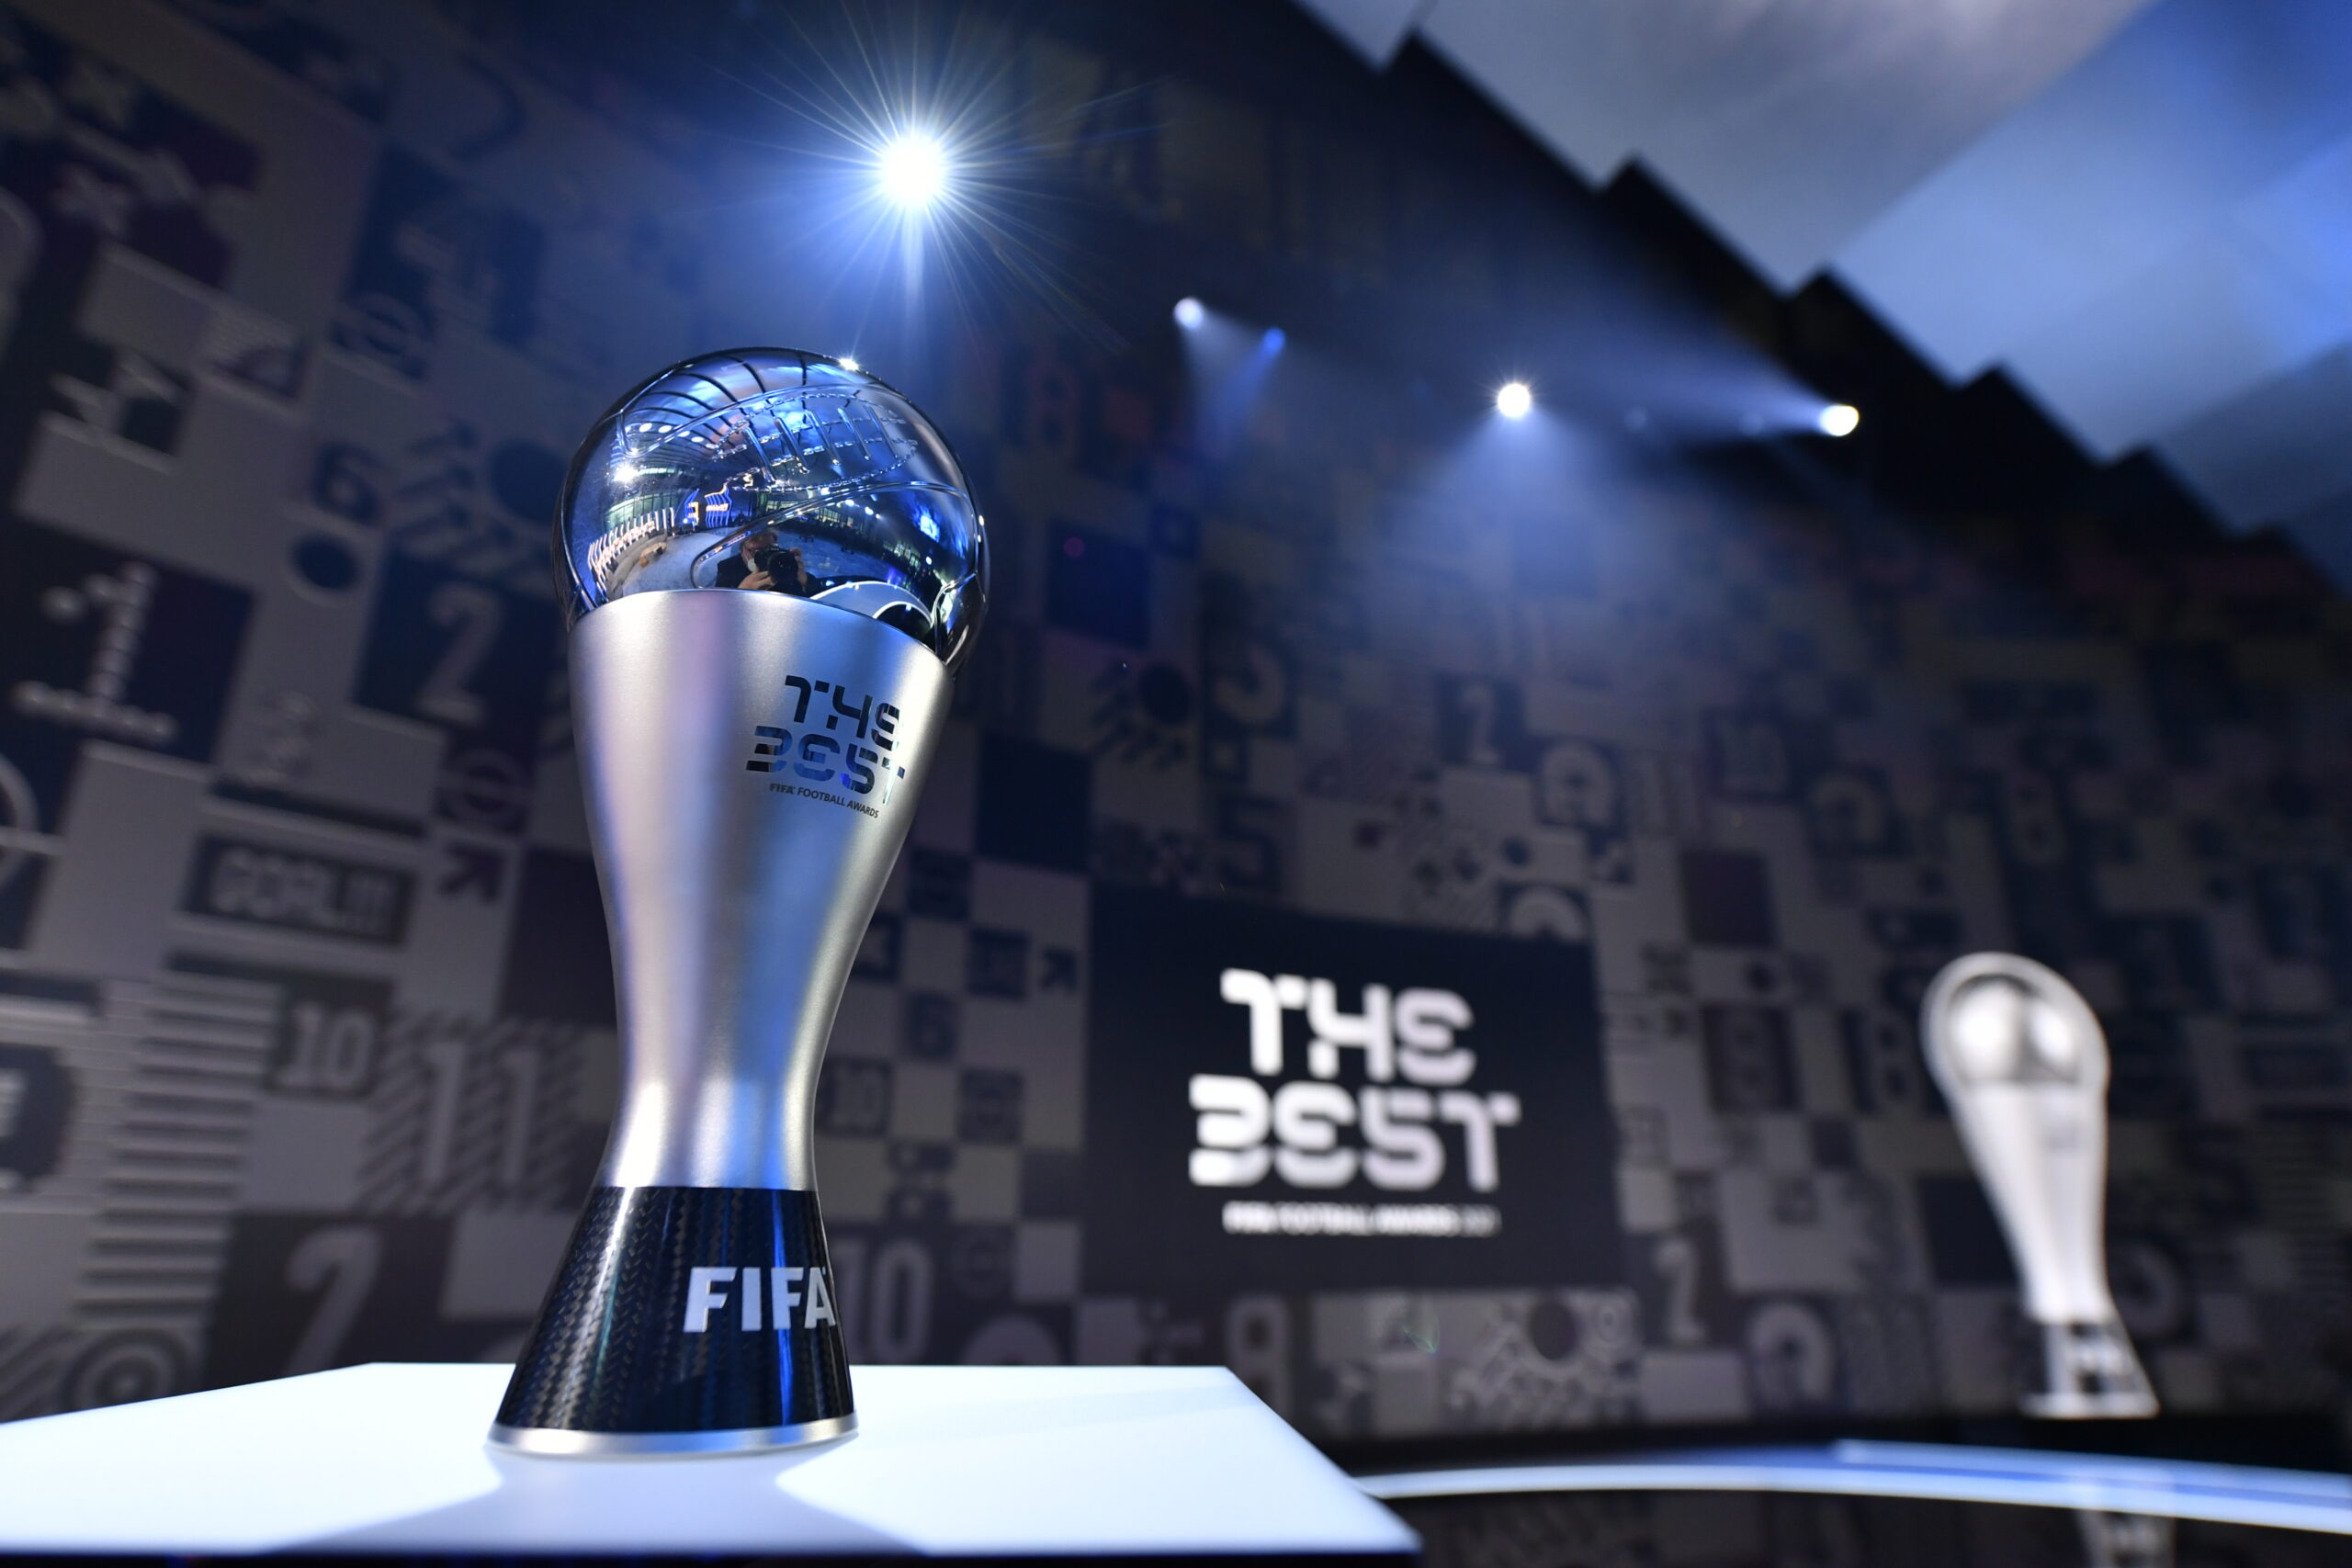 Fifa divulga finalistas do prêmio The Best para melhor jogador